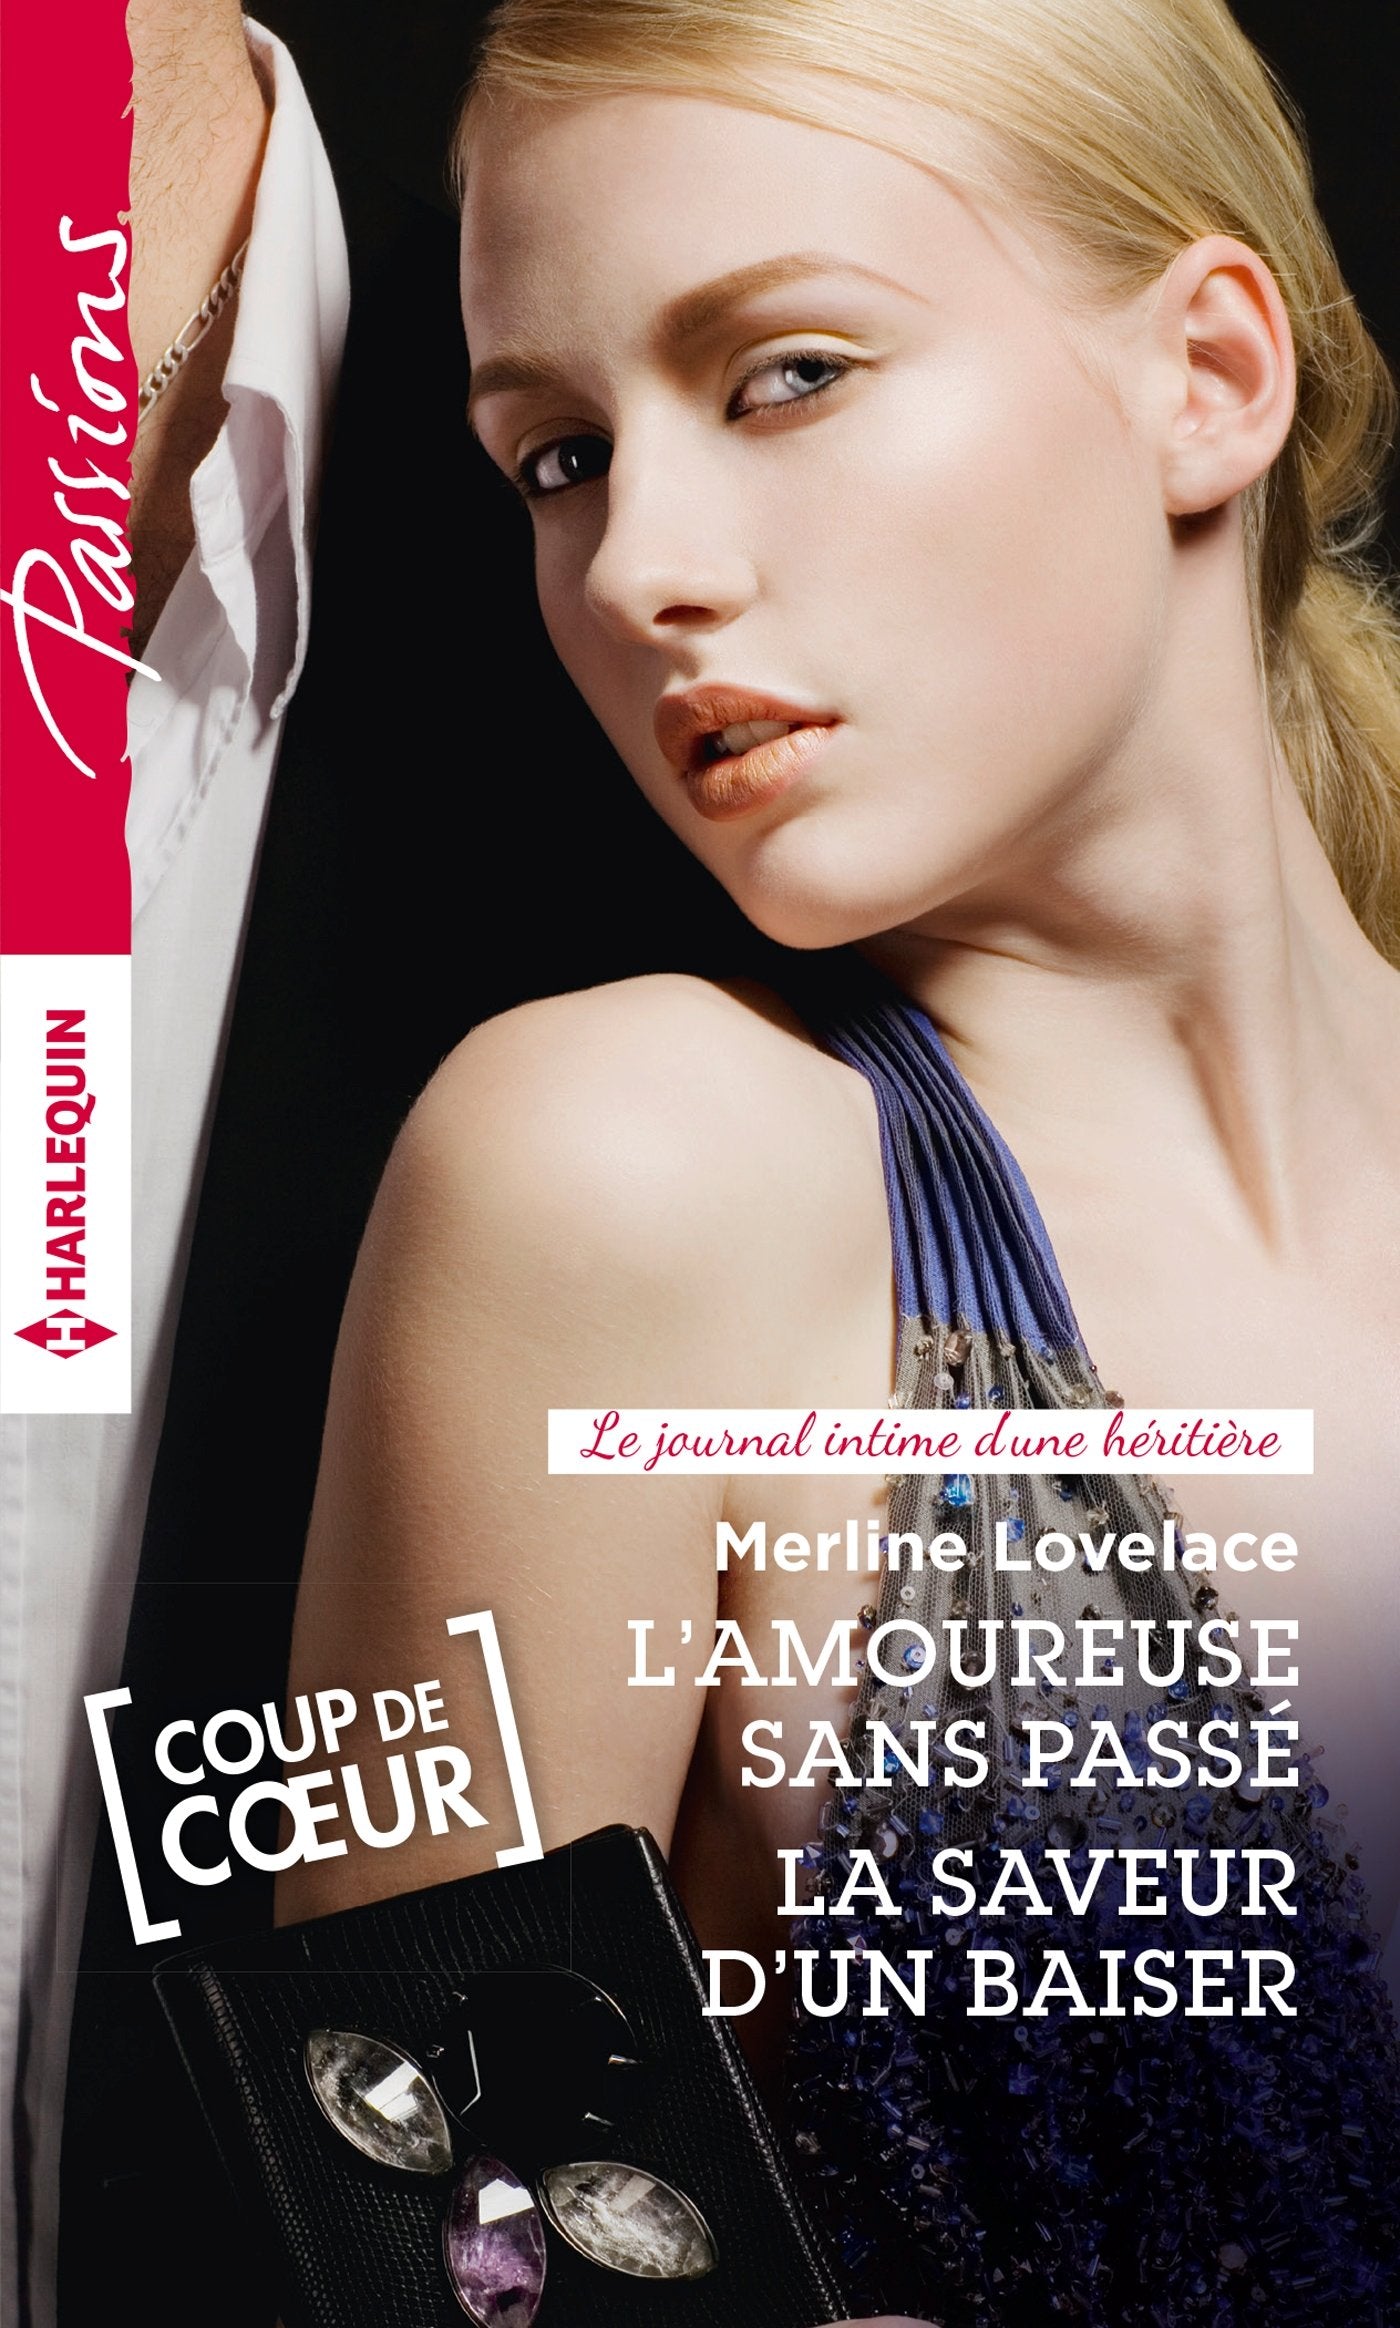 Livre ISBN 2280330032 Passions (Harlequin) # 571 : L'amoureuse sans passé – La saveur d'un baiser (Merline Lovelace)